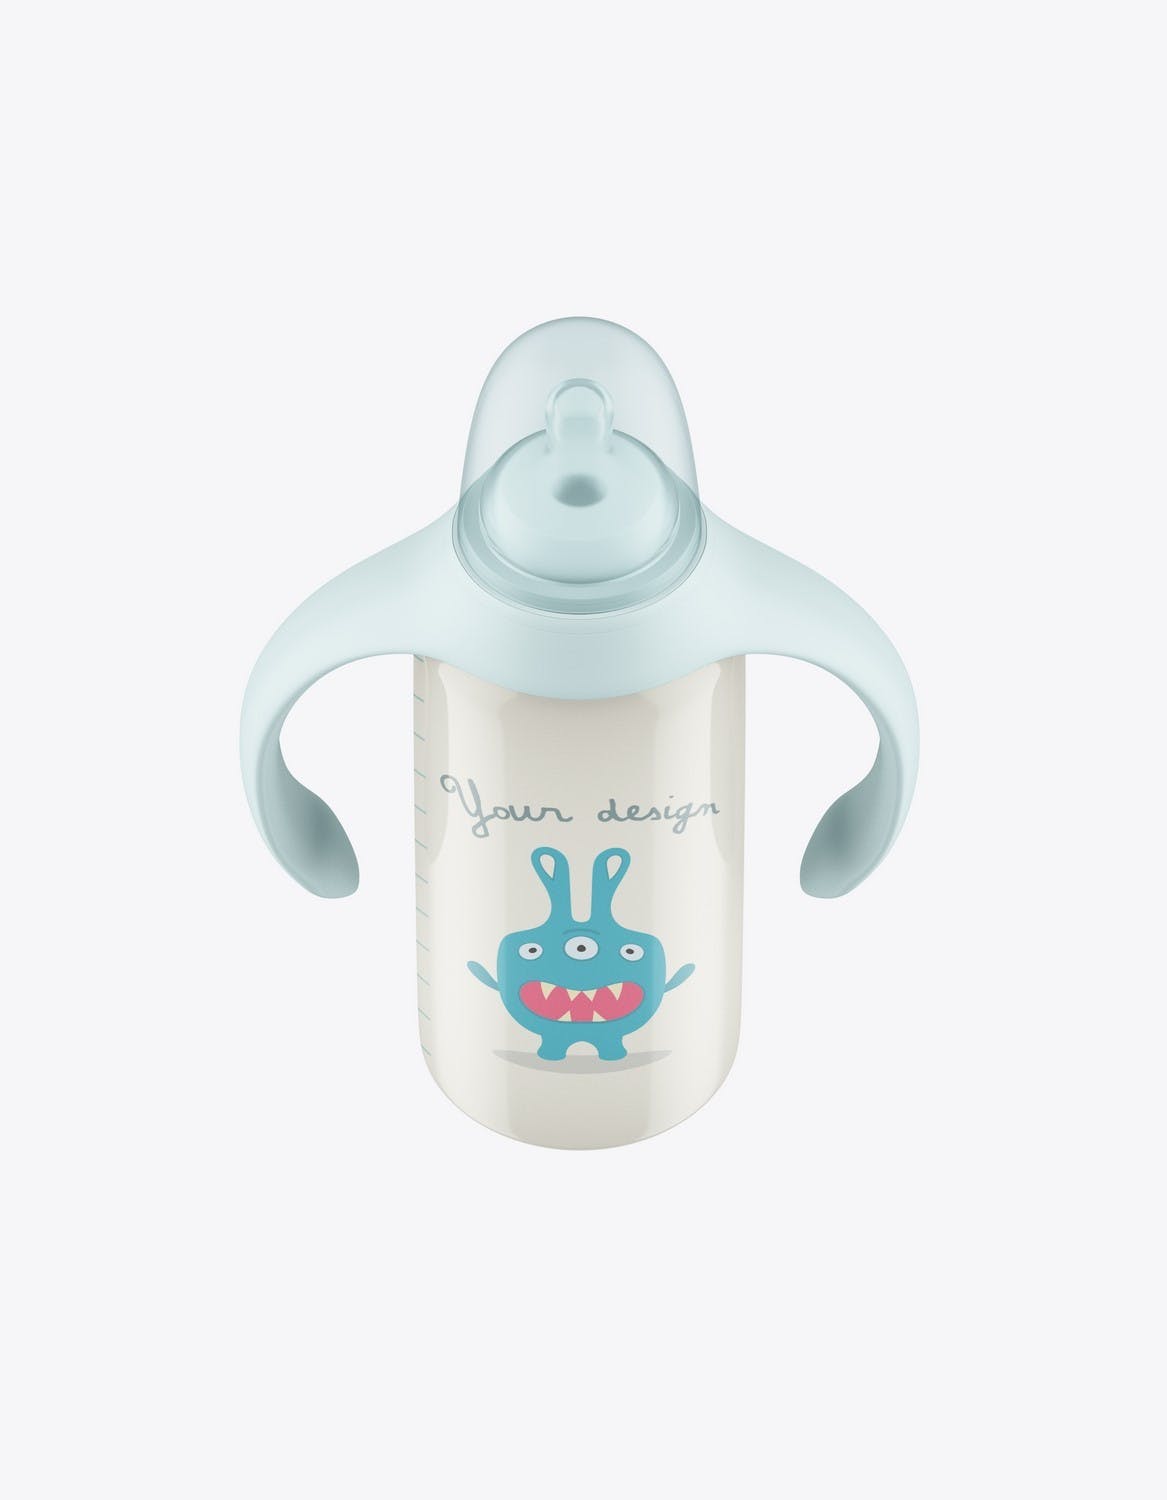 带把手的婴儿奶瓶包装设计样机 Baby Bottle with Handles Mockup 样机素材 第7张